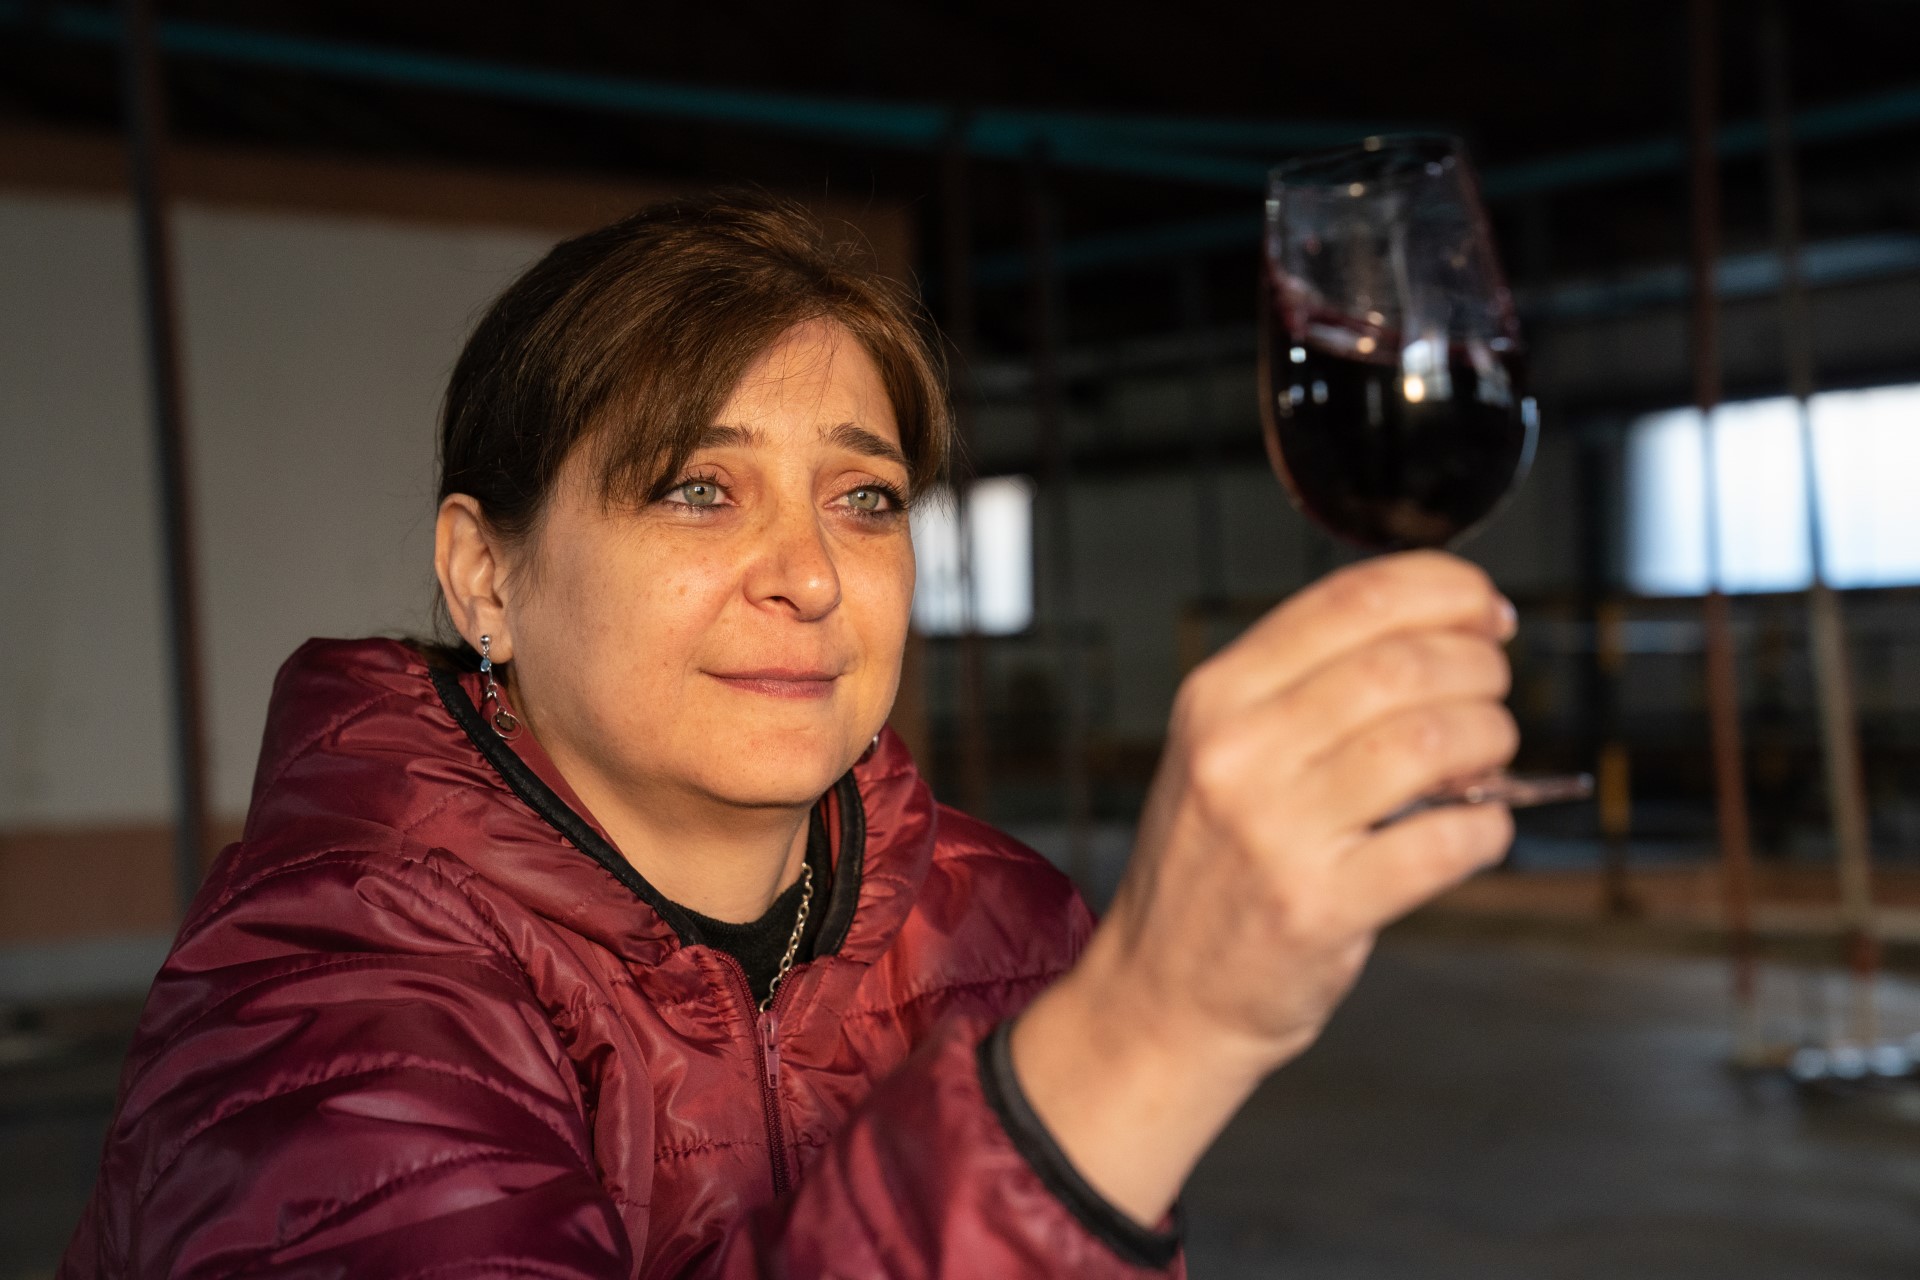 woman holding wineglass